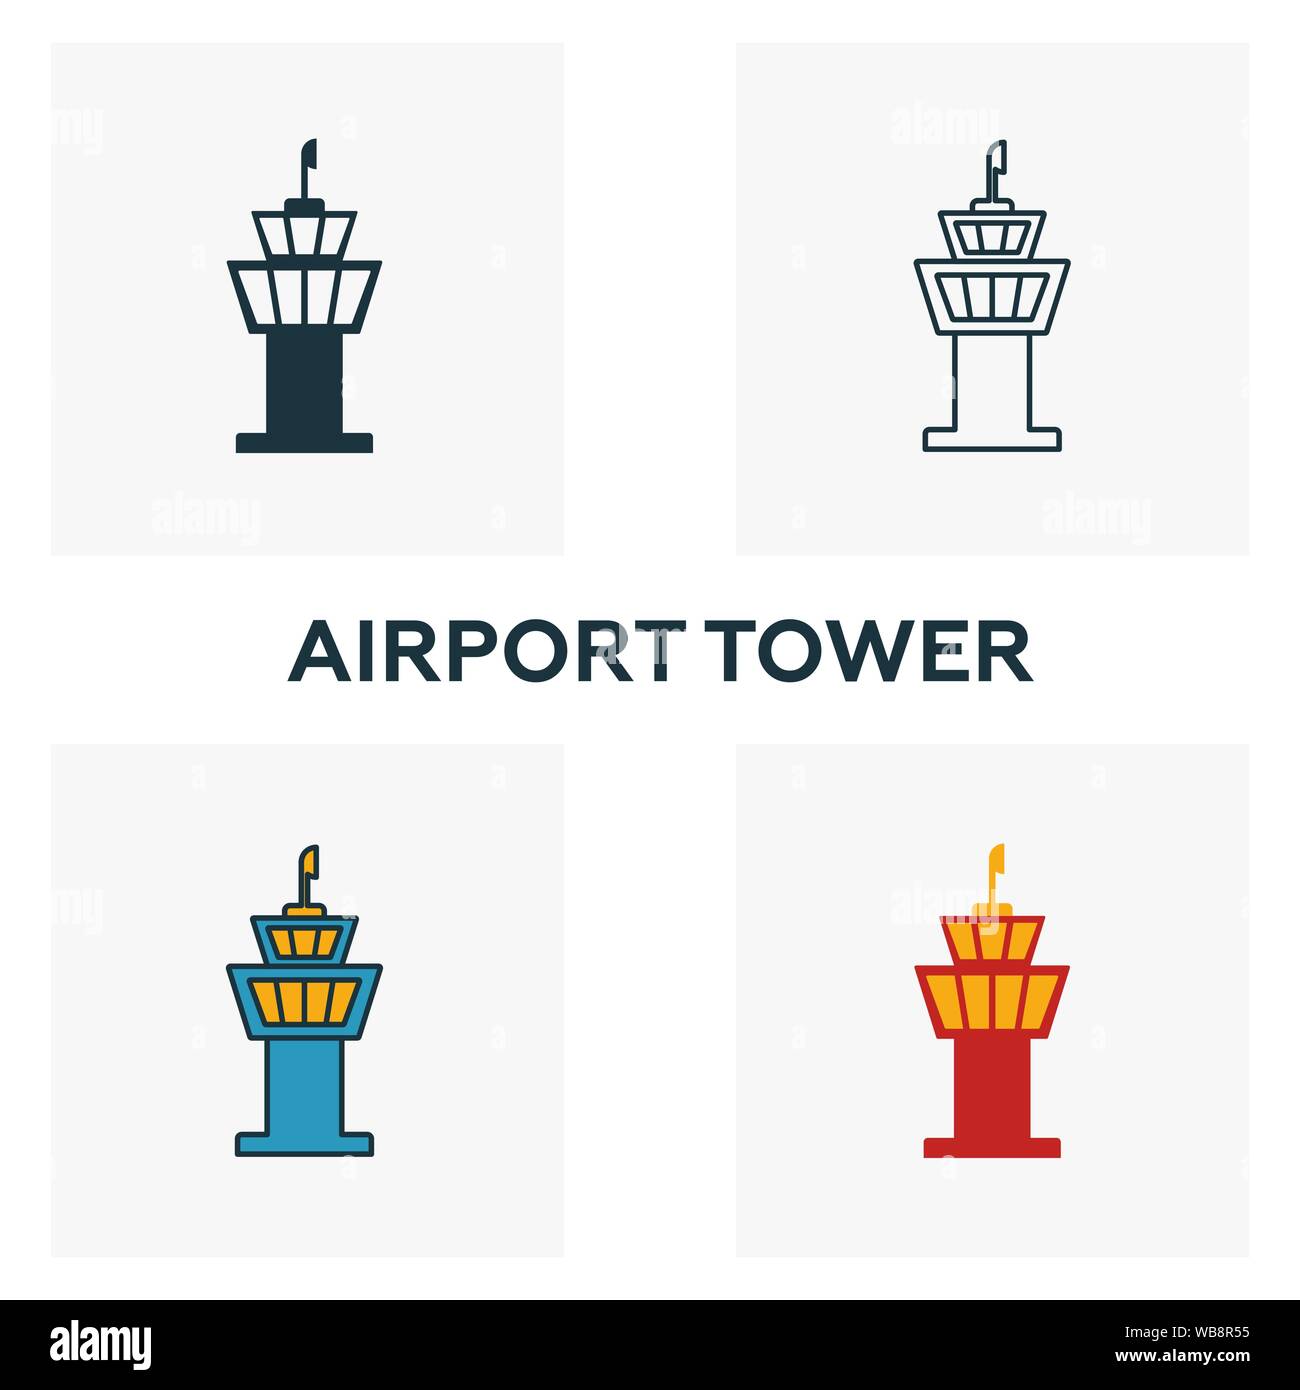 Airport Tower Icon Set. Vier Elemente in verschiedenen Stilen vom Flughafen icons Collection. Kreative Airport Tower Icons, Outline, farbige und flach Stock Vektor